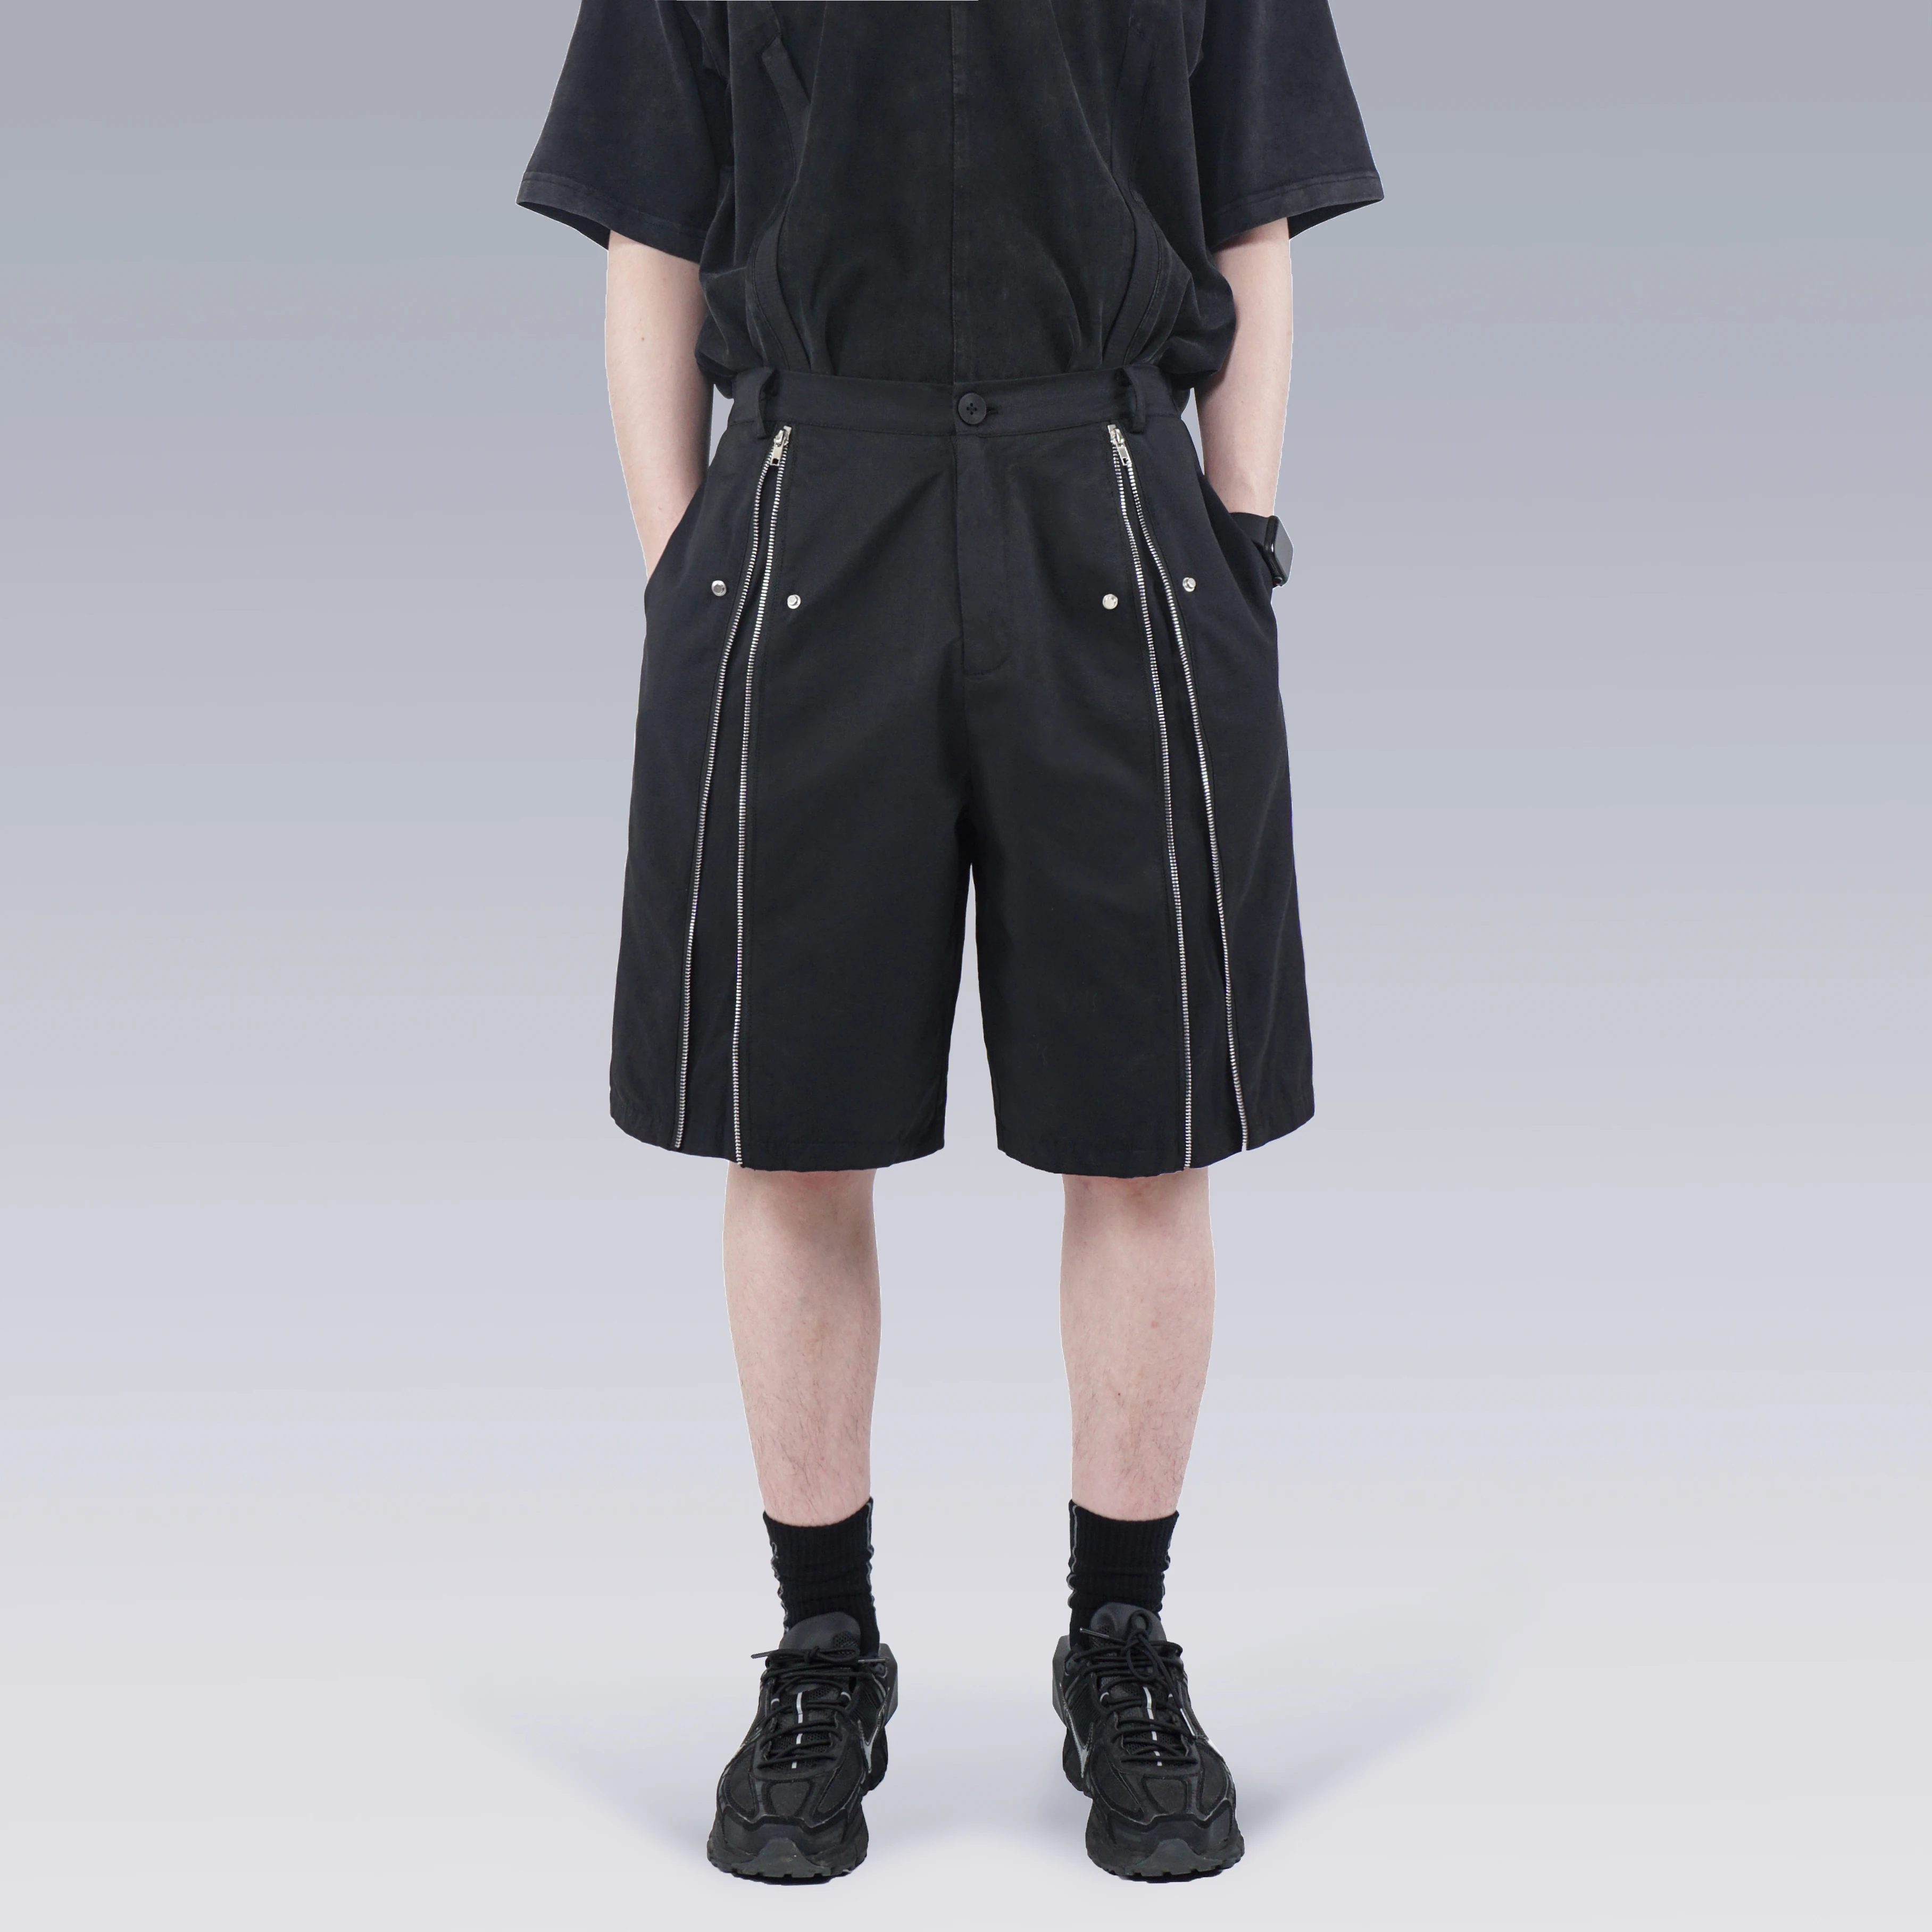 SILENSTORM 22SS Longitudinal Symmetry Multi-Wear Techwear High Street Fashion Shorts Metal Zipper Cropped Pants Men